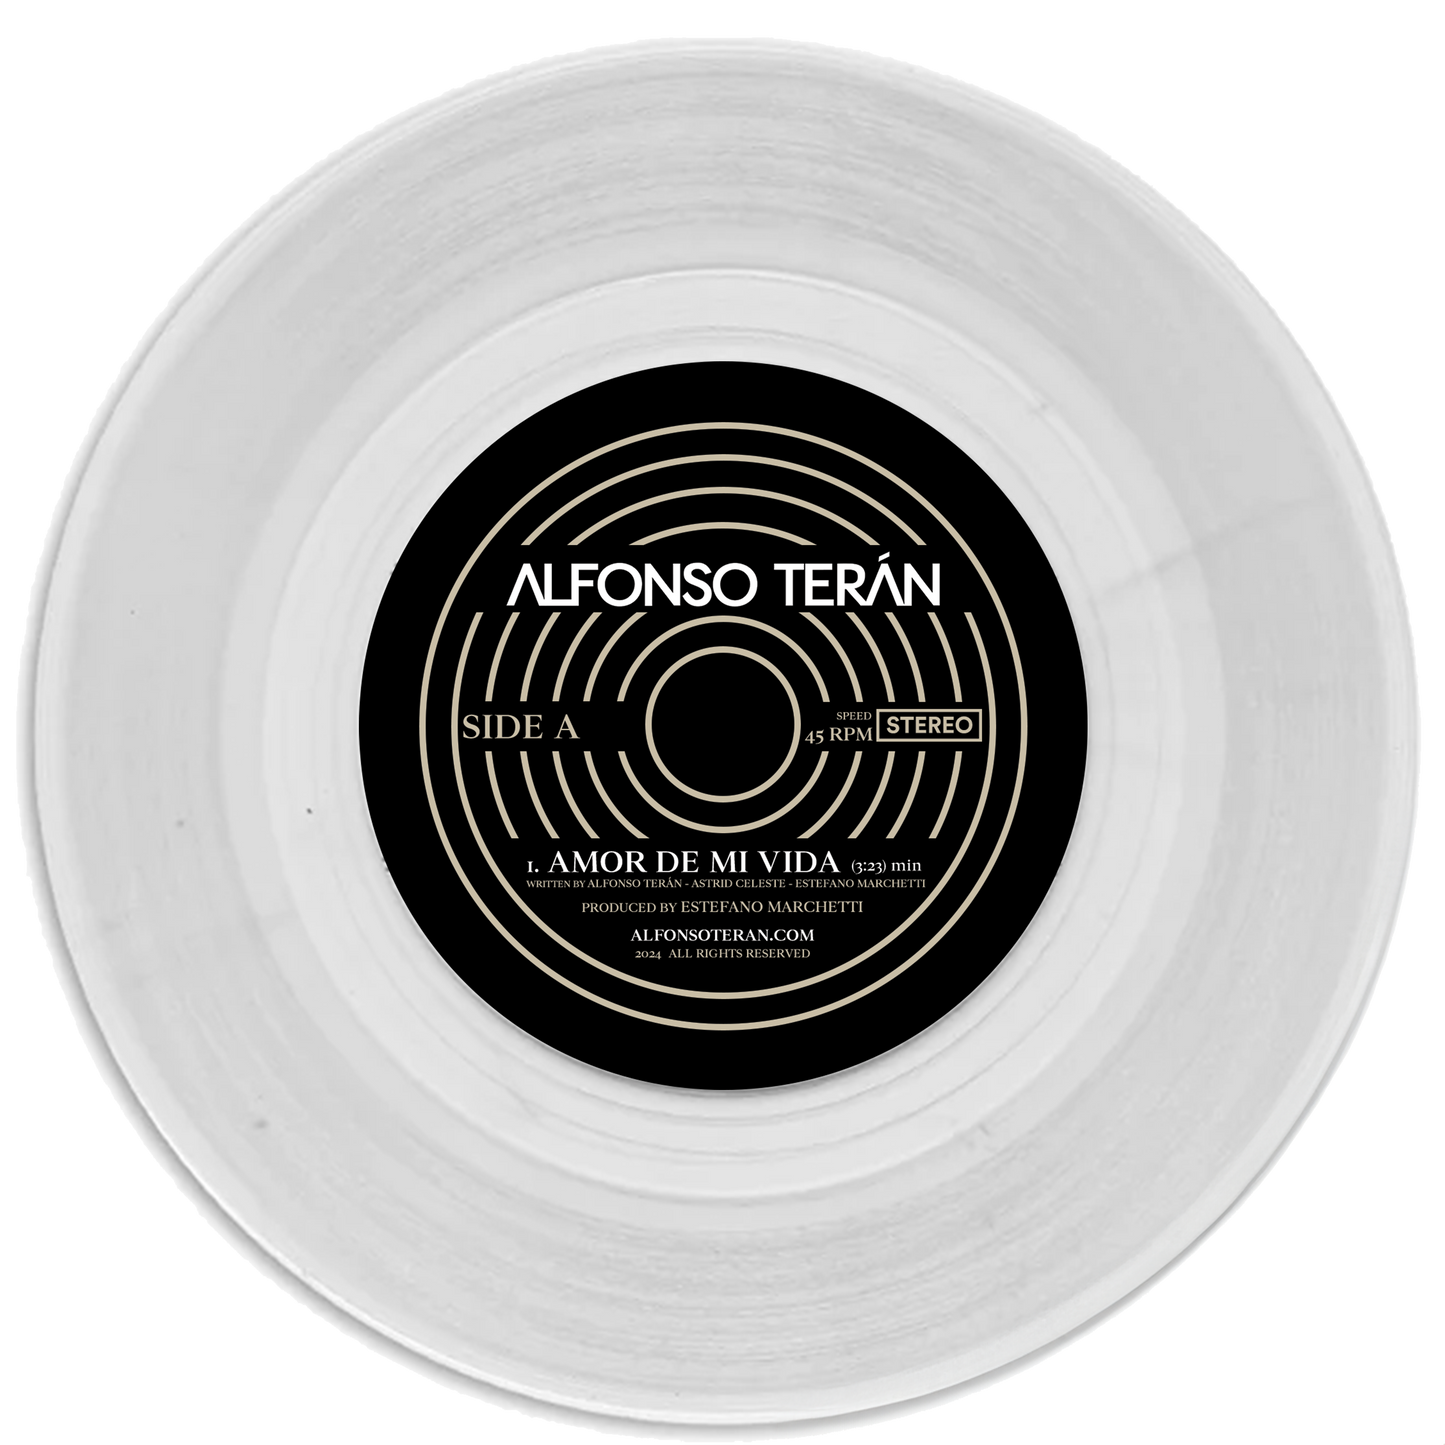 Limited Edition "White Pearl" Amor De Mi Vida 7 inch Vinyl Record